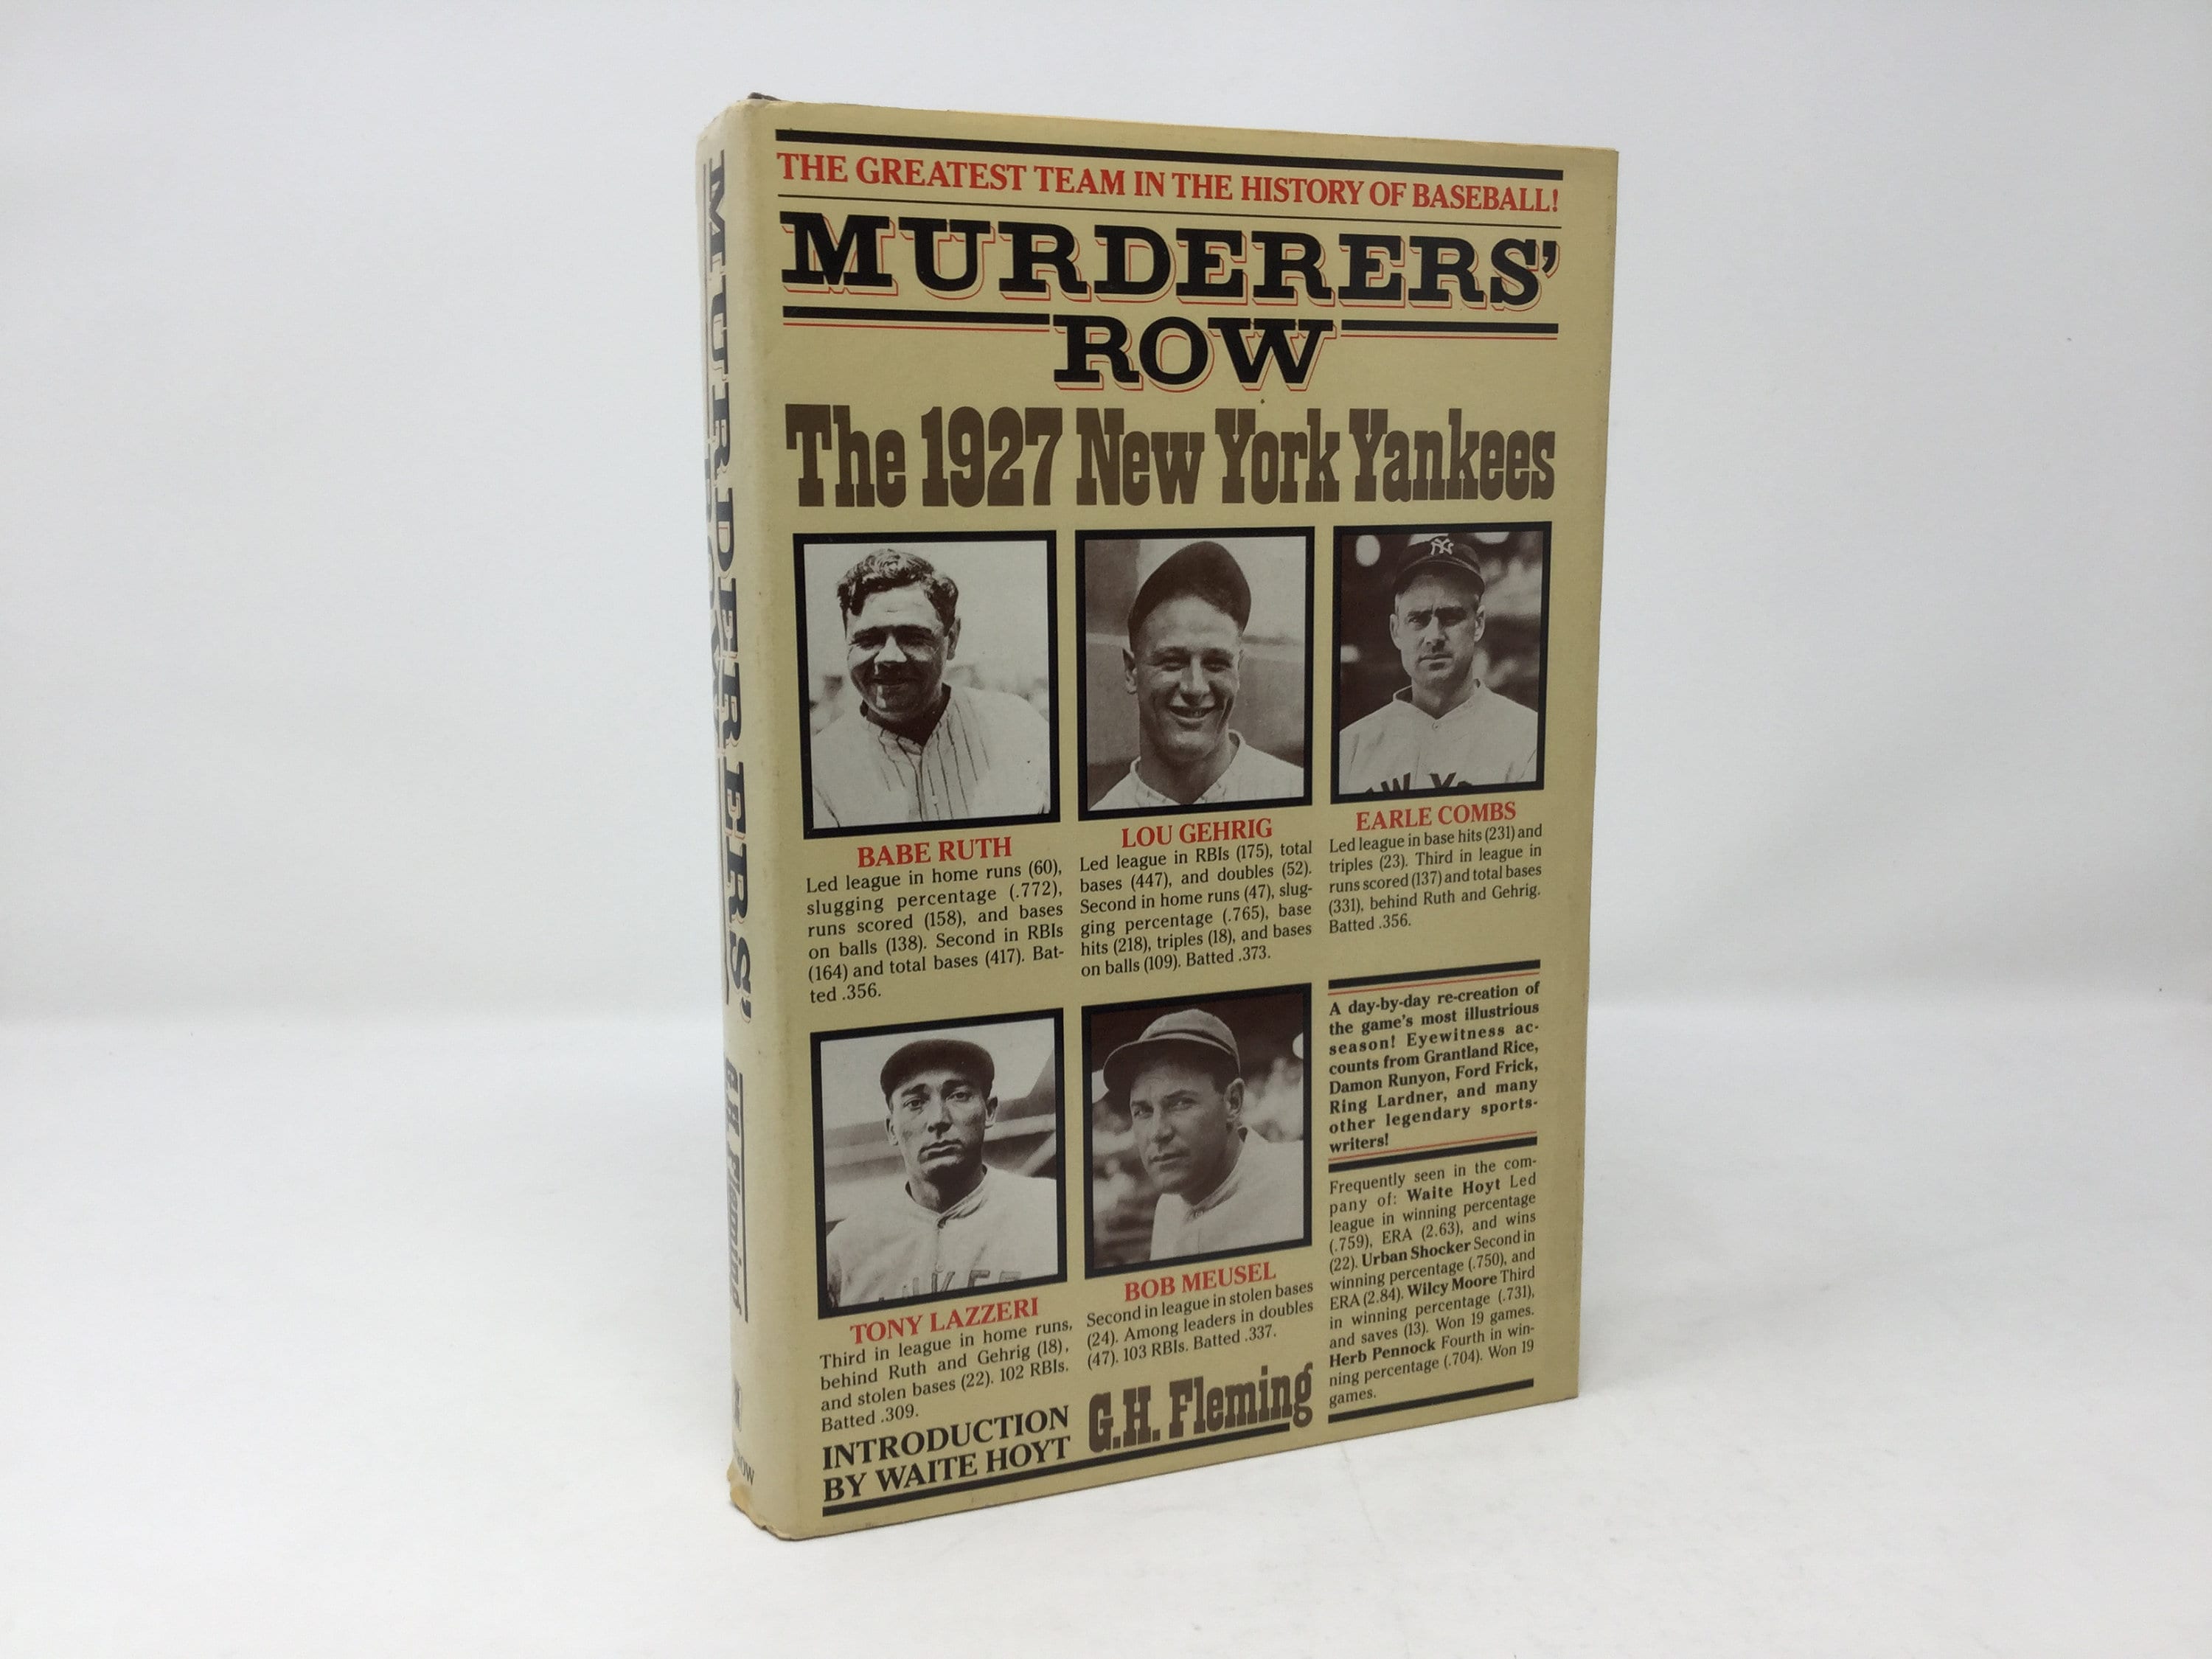 1927 NEW YORK YANKEES Legendary Murderers Row Team Photo 8x10